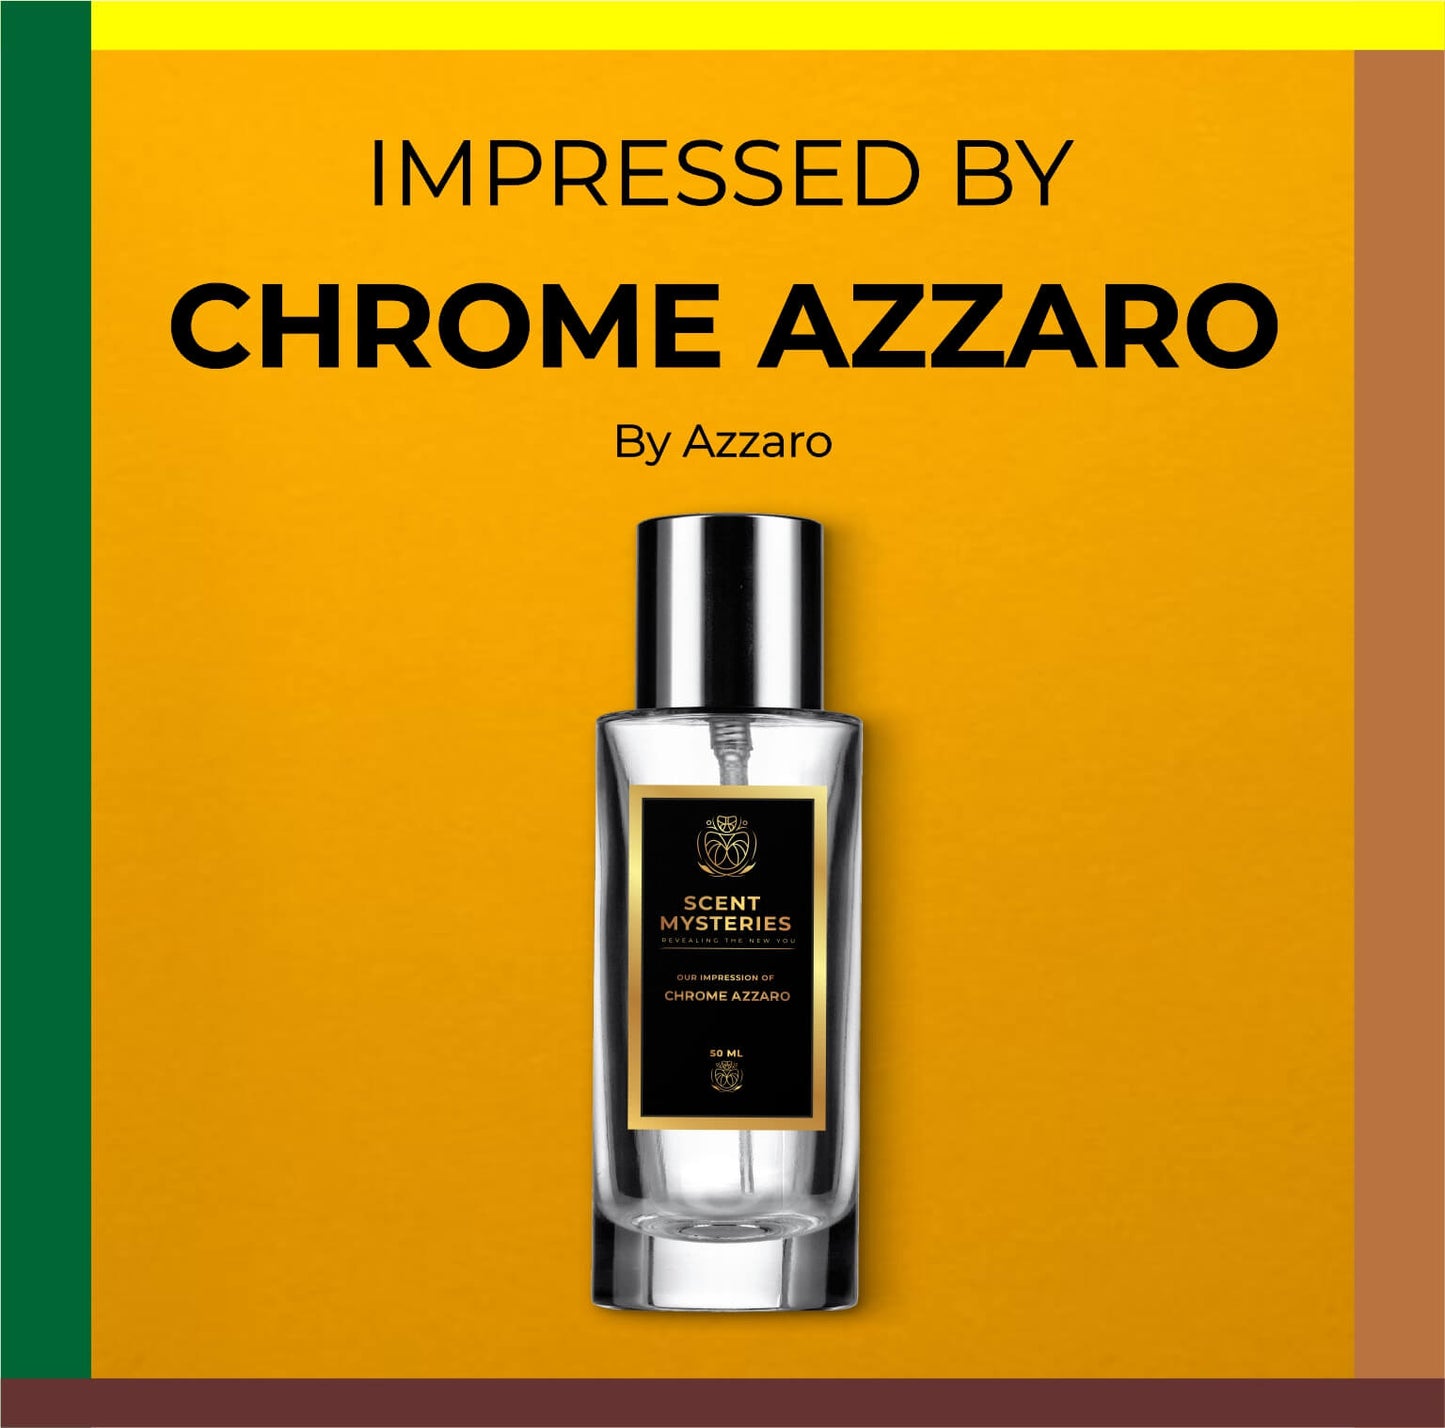 Our Impression of Chrome Azzaro